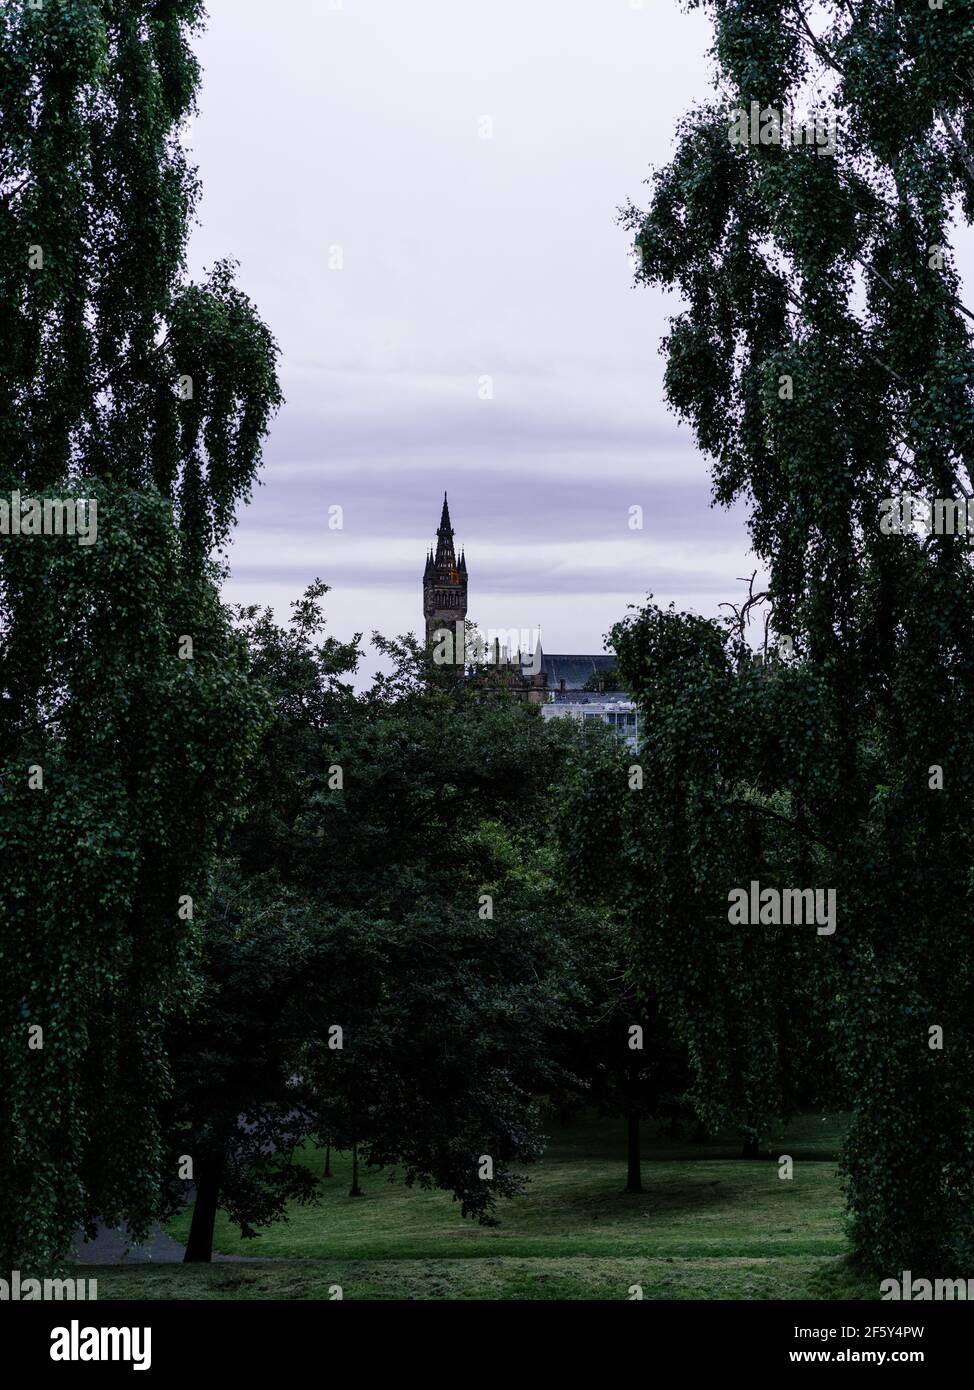 Blick vom Kelvingrove Park durch die Bäume auf den Turm der University of Glasgow, der von Gilbert Scott entworfen wurde. Stockfoto